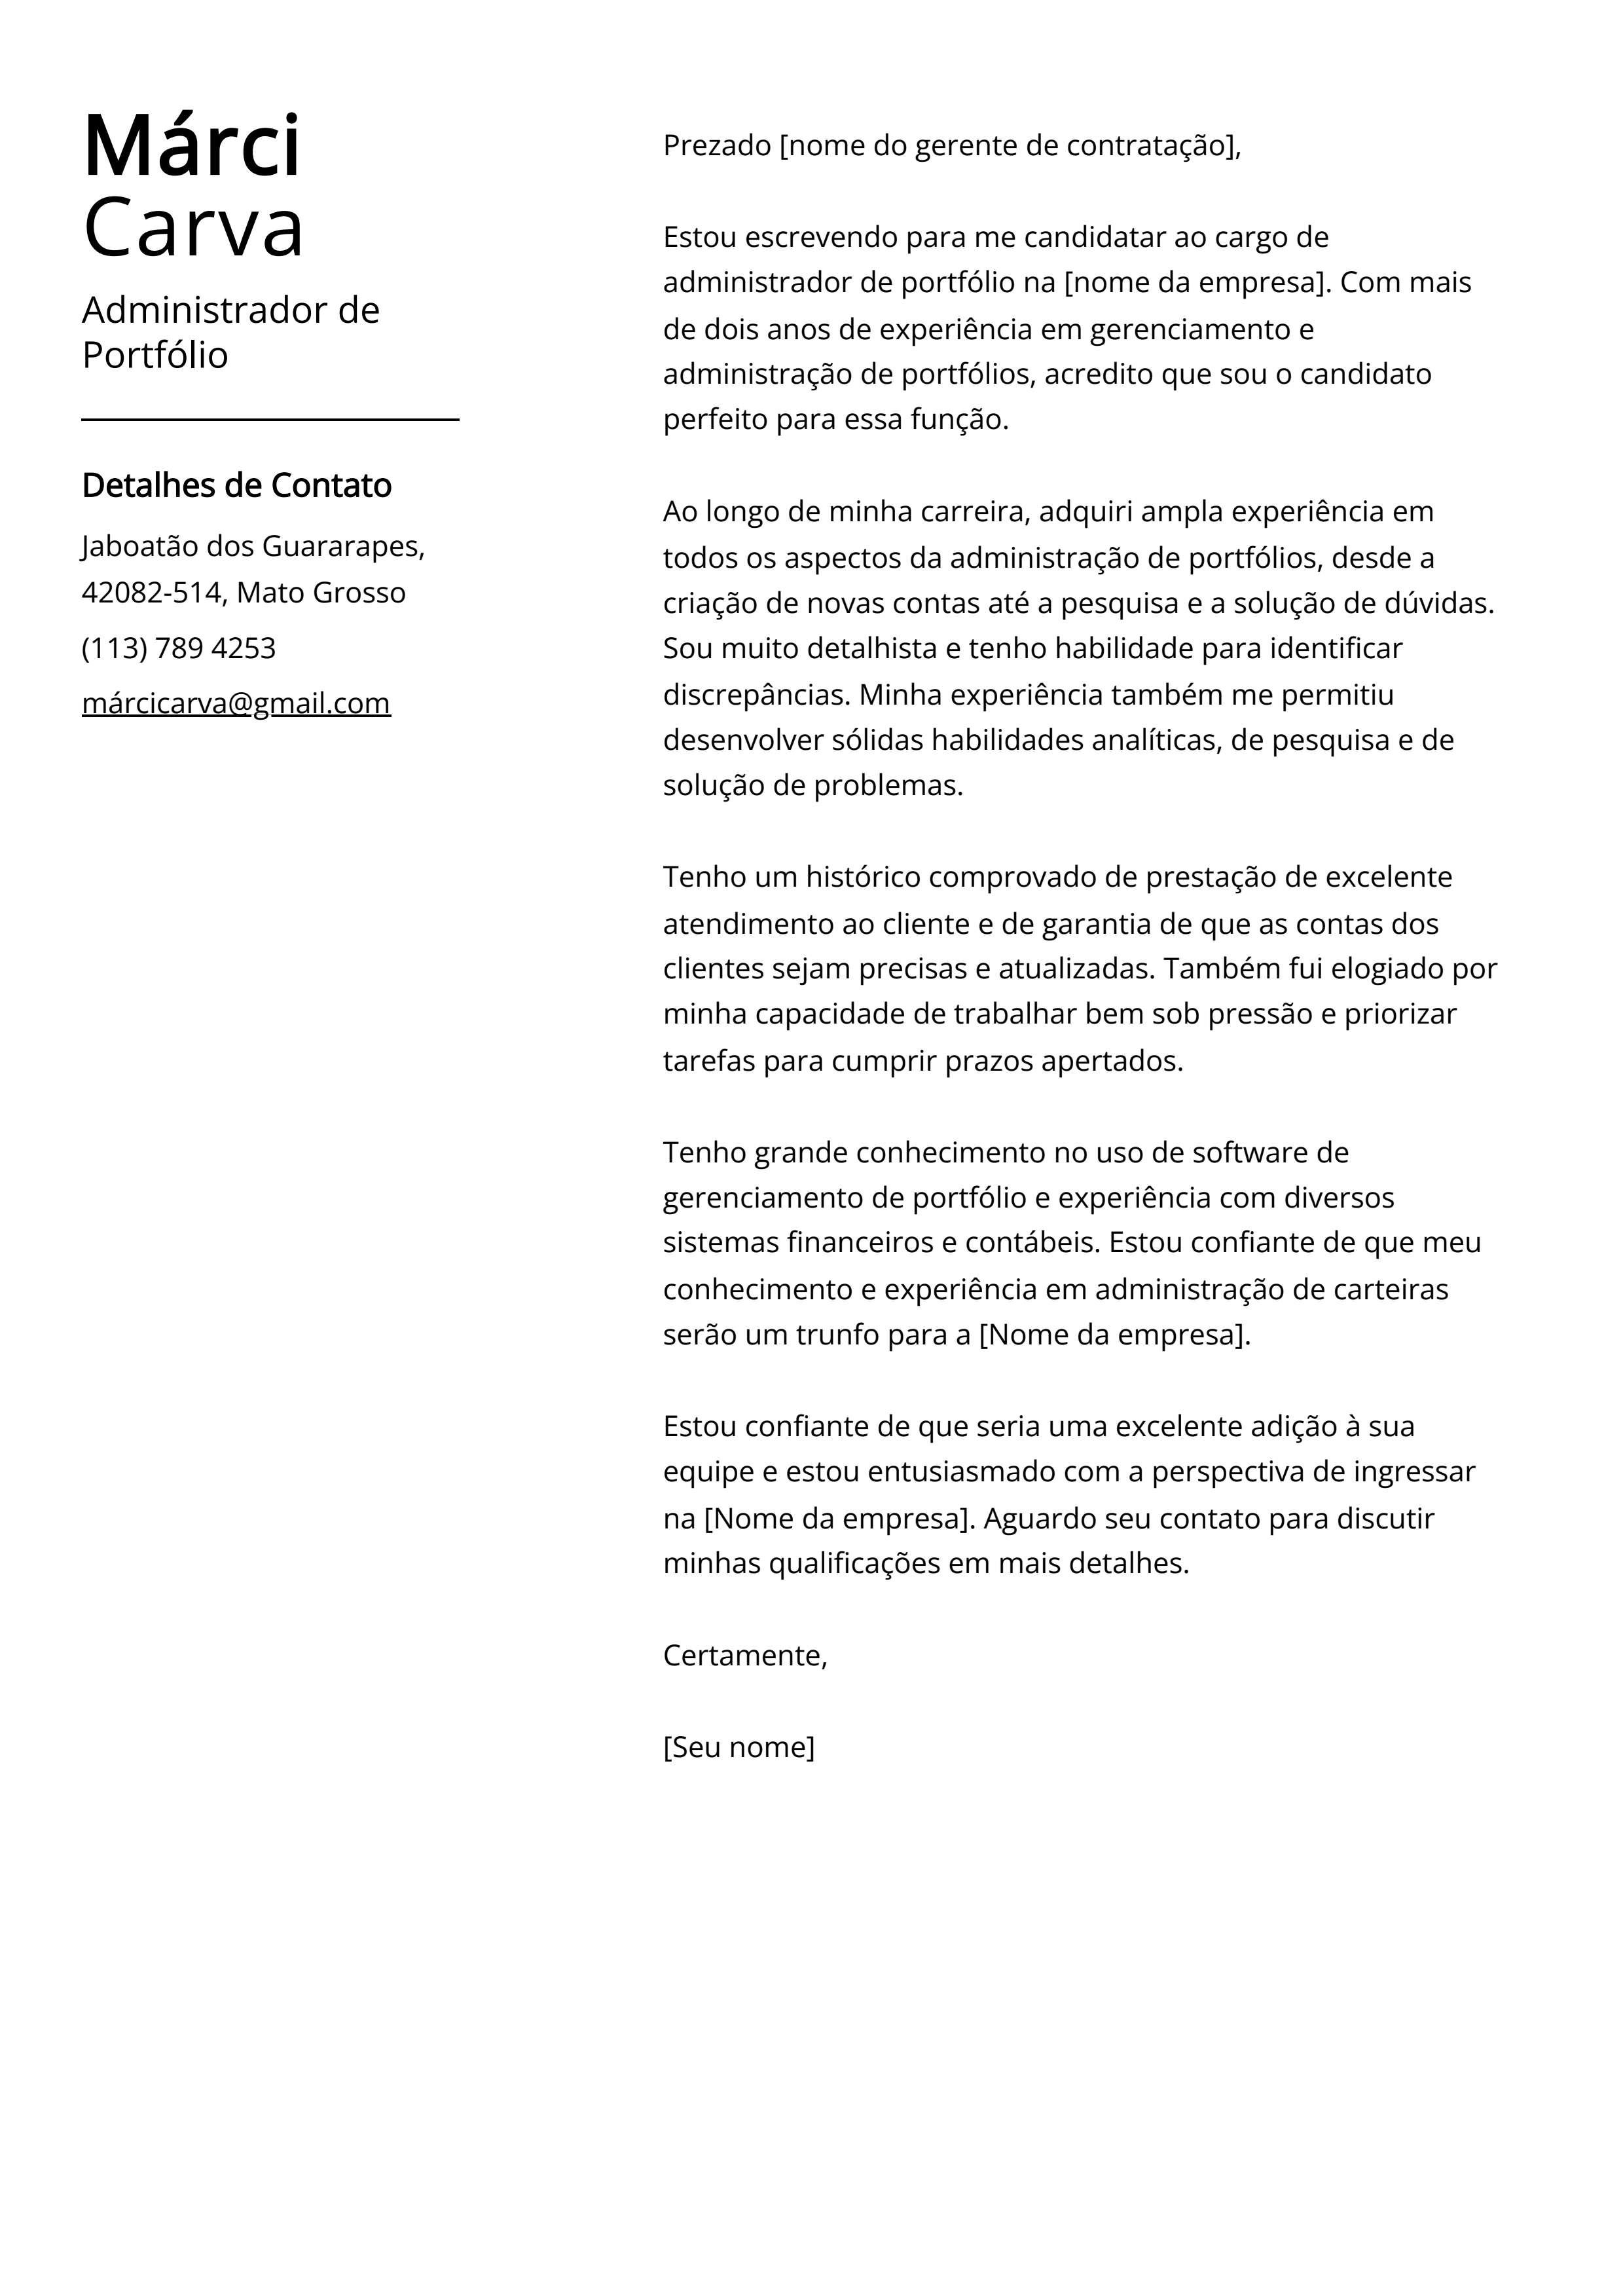 Exemplo de carta de apresentação do Administrador de Portfólio